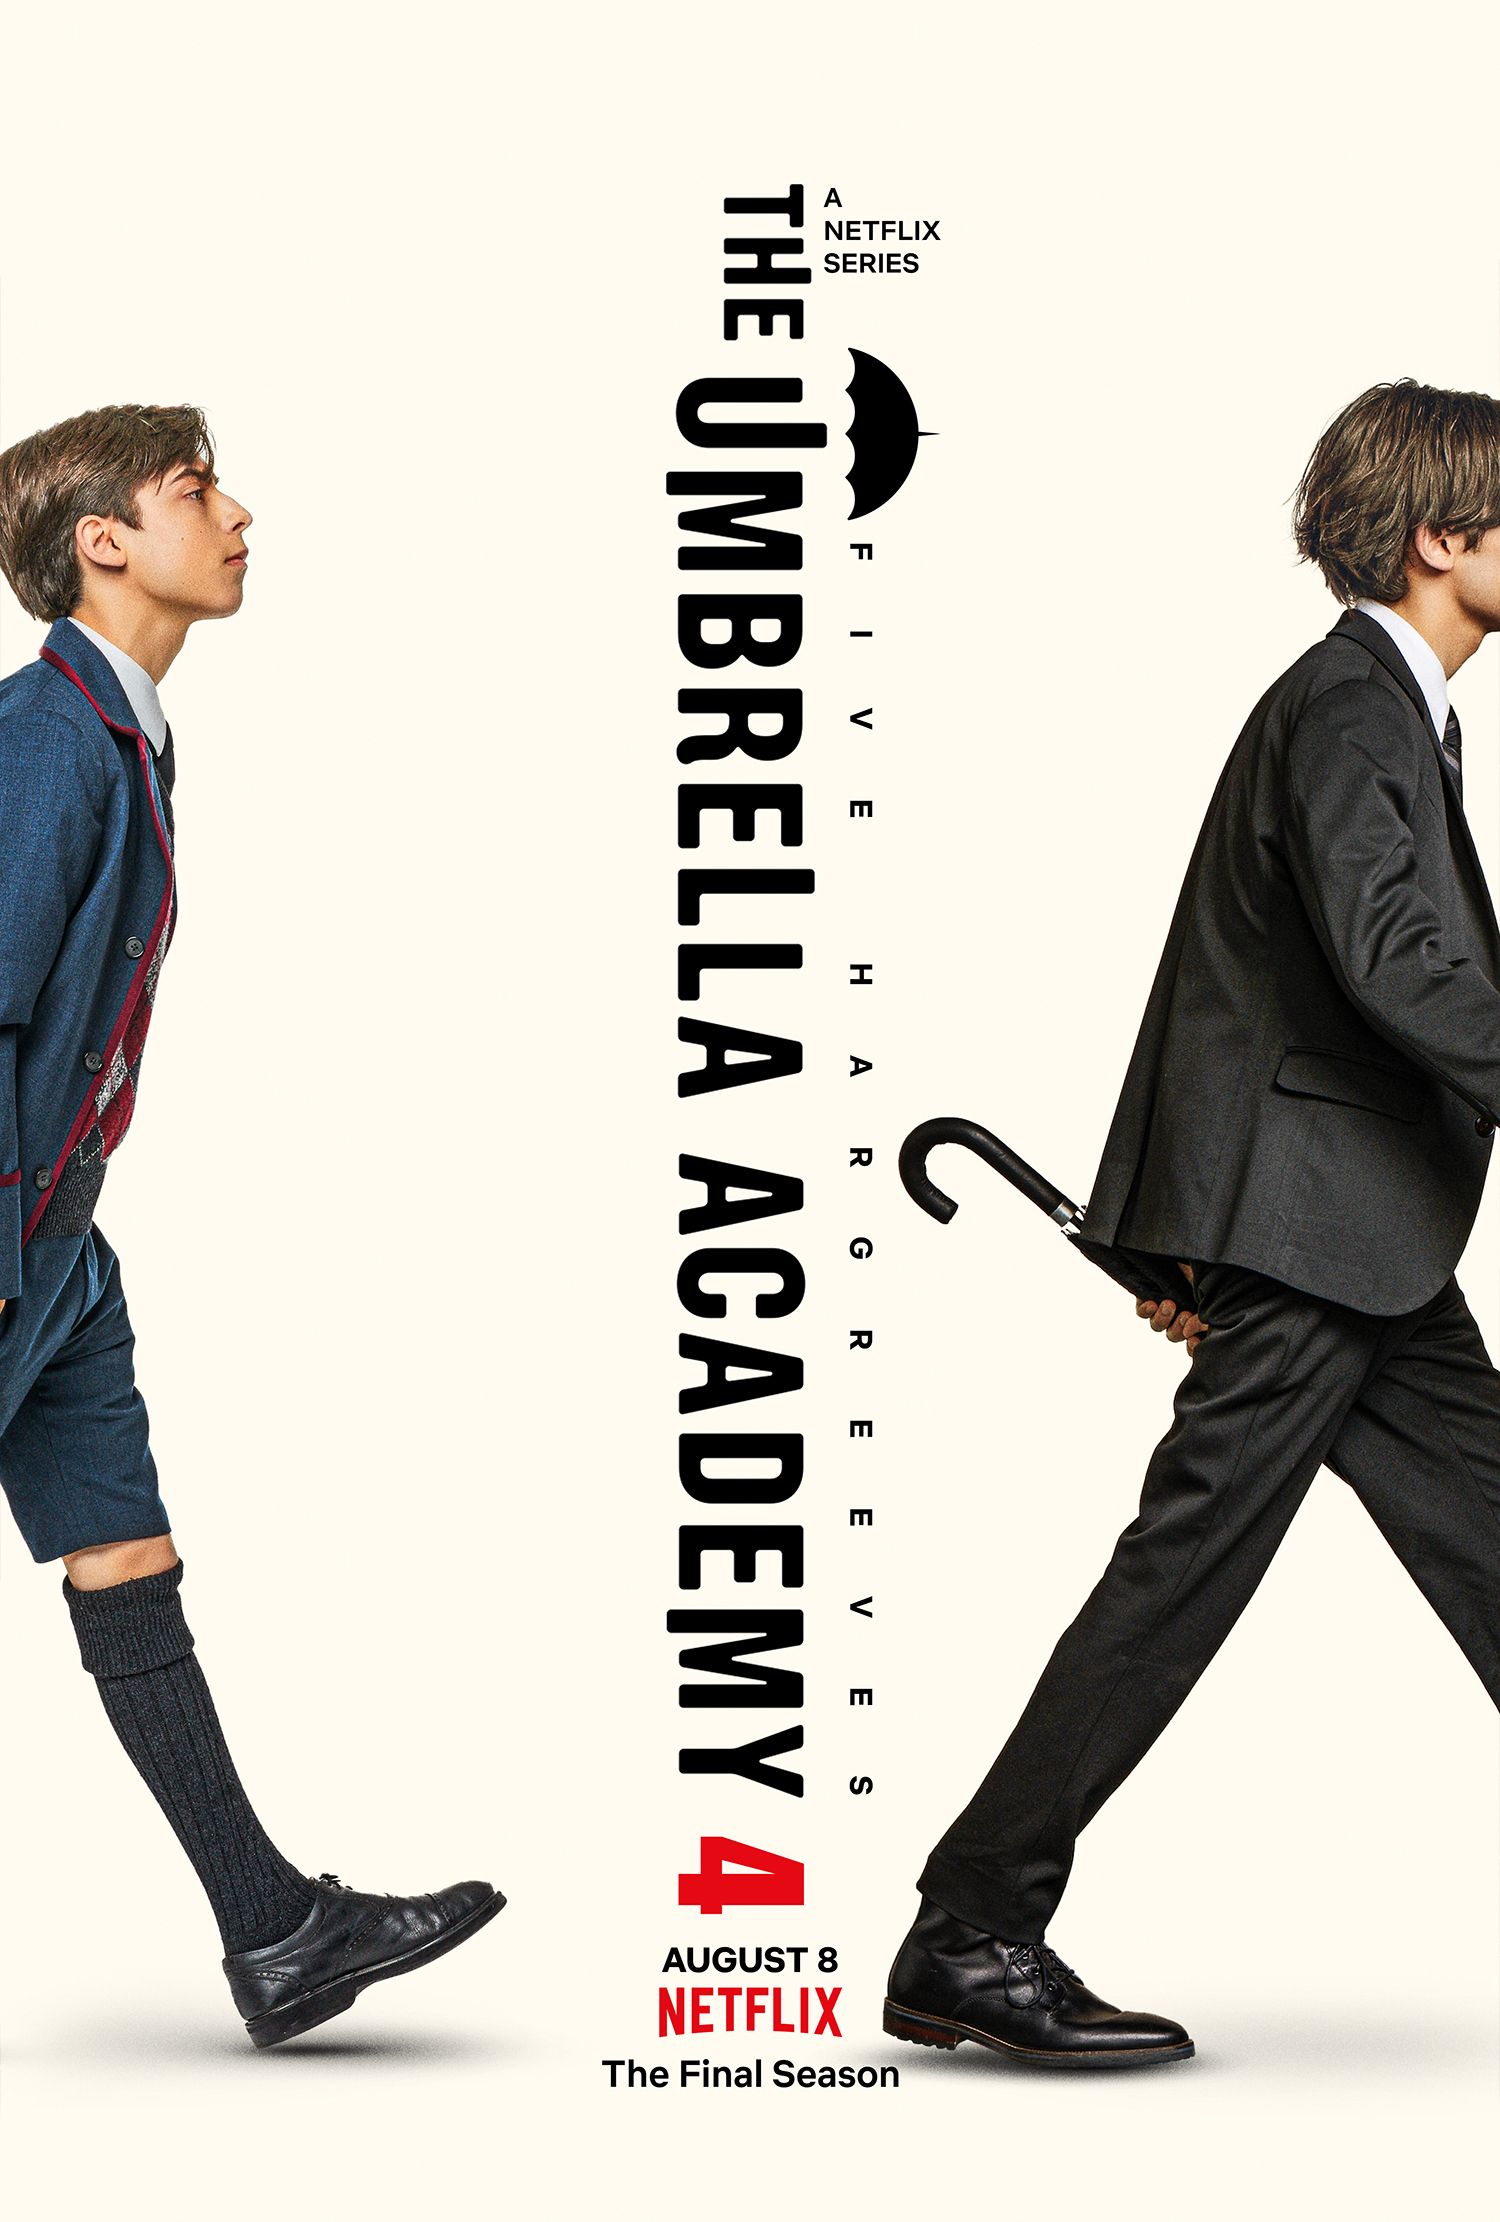 Pôster da 4ª temporada da The Umbrella Academy mostrando cinco andando